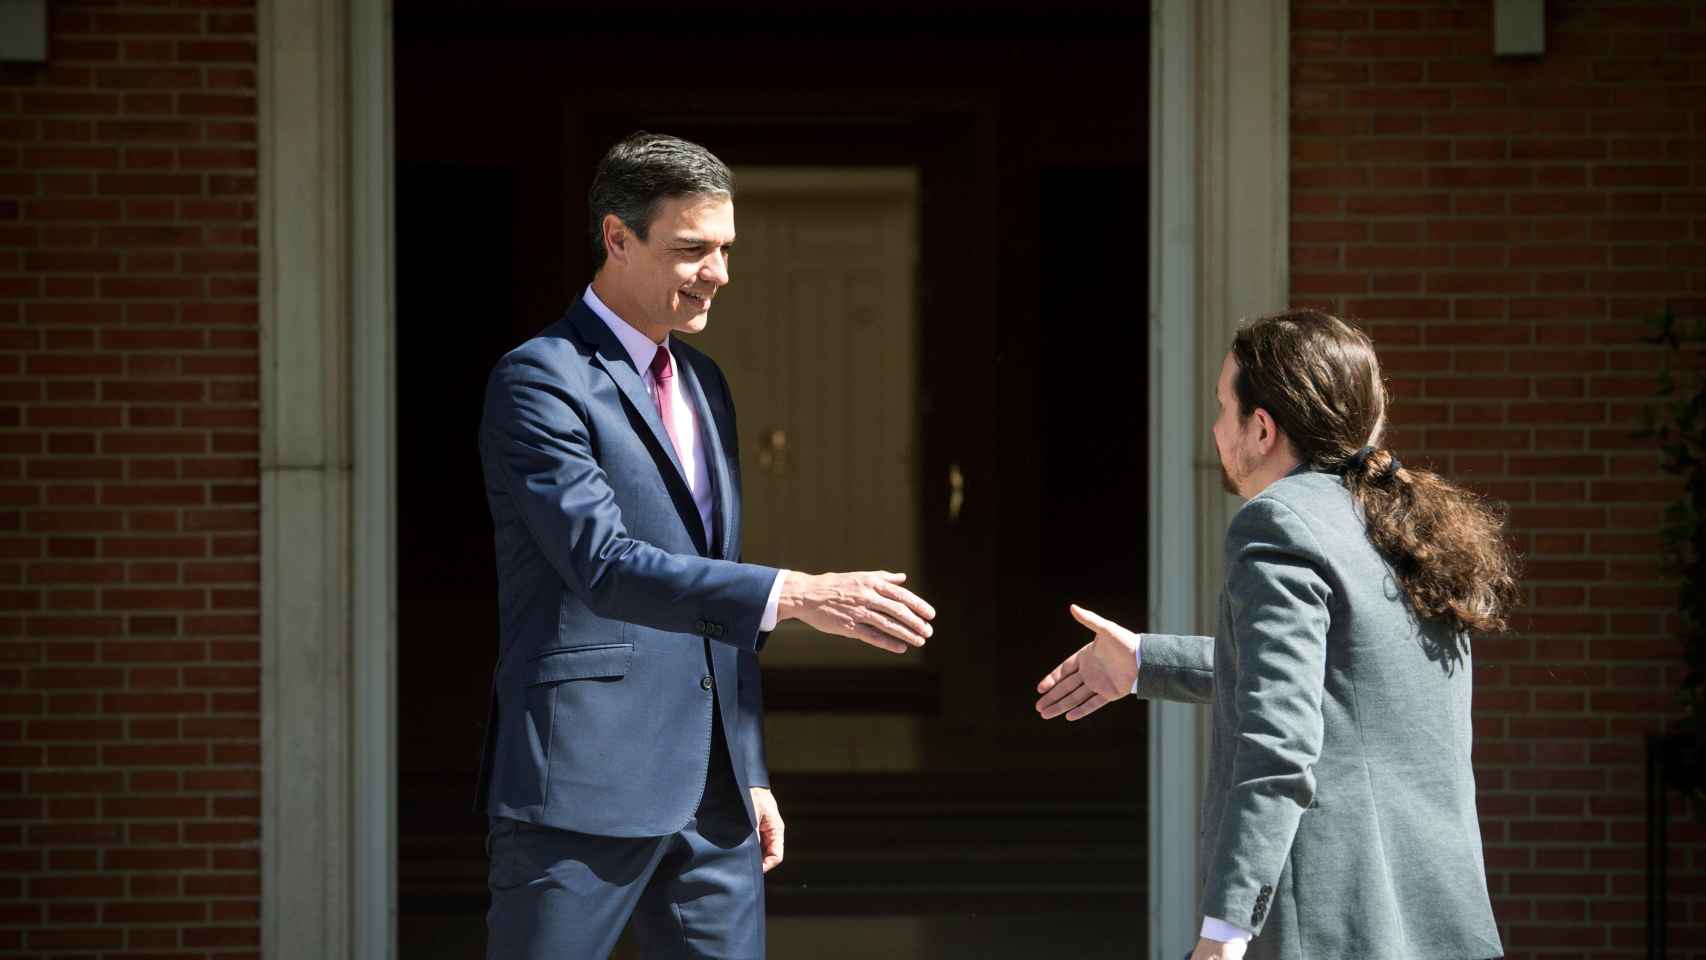 Pedro Sánchez recibe a Pablo Iglesias en Moncloa.